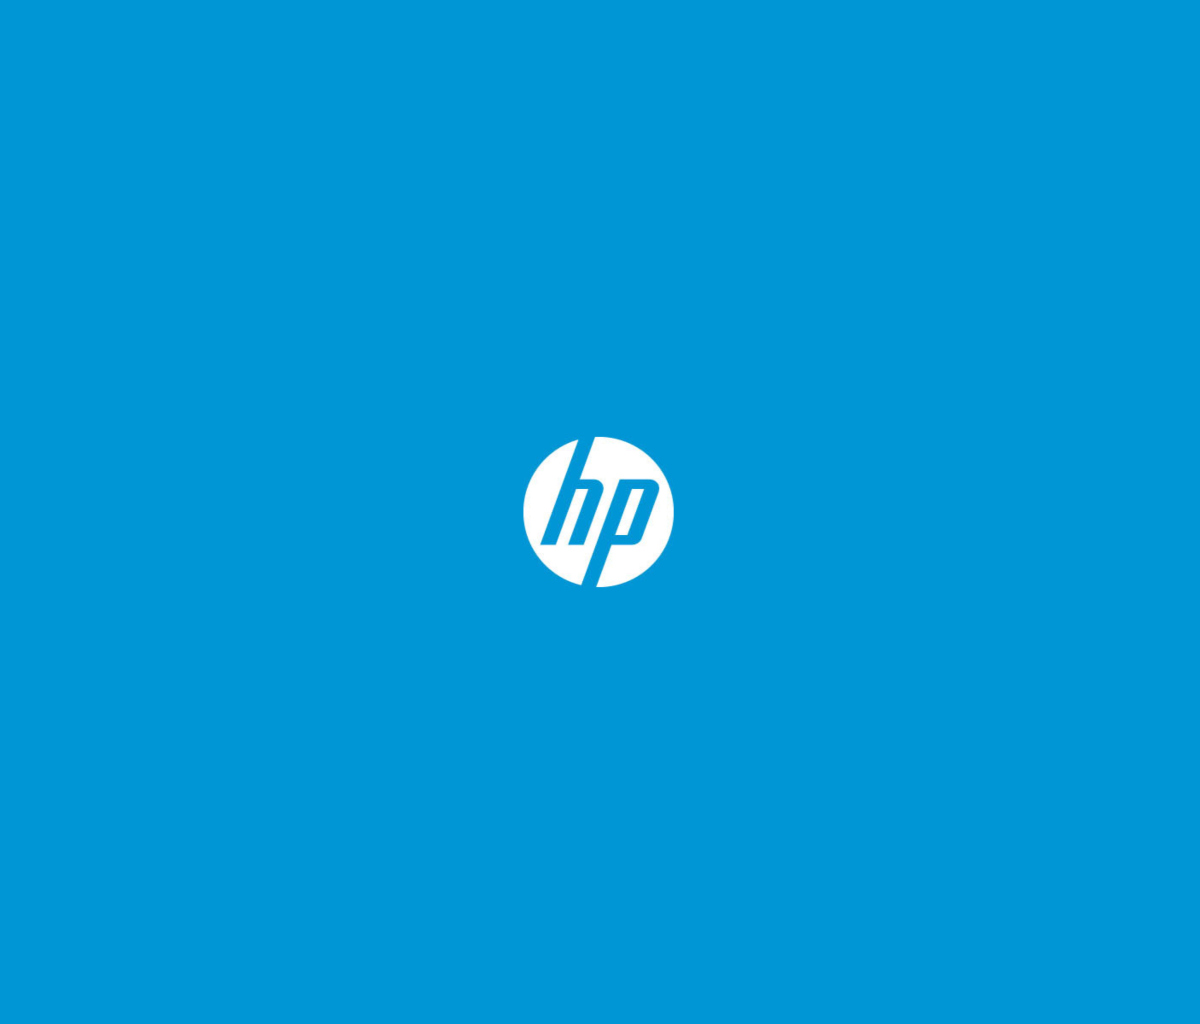 Hewlett-Packard Logo wallpaper 1200x1024